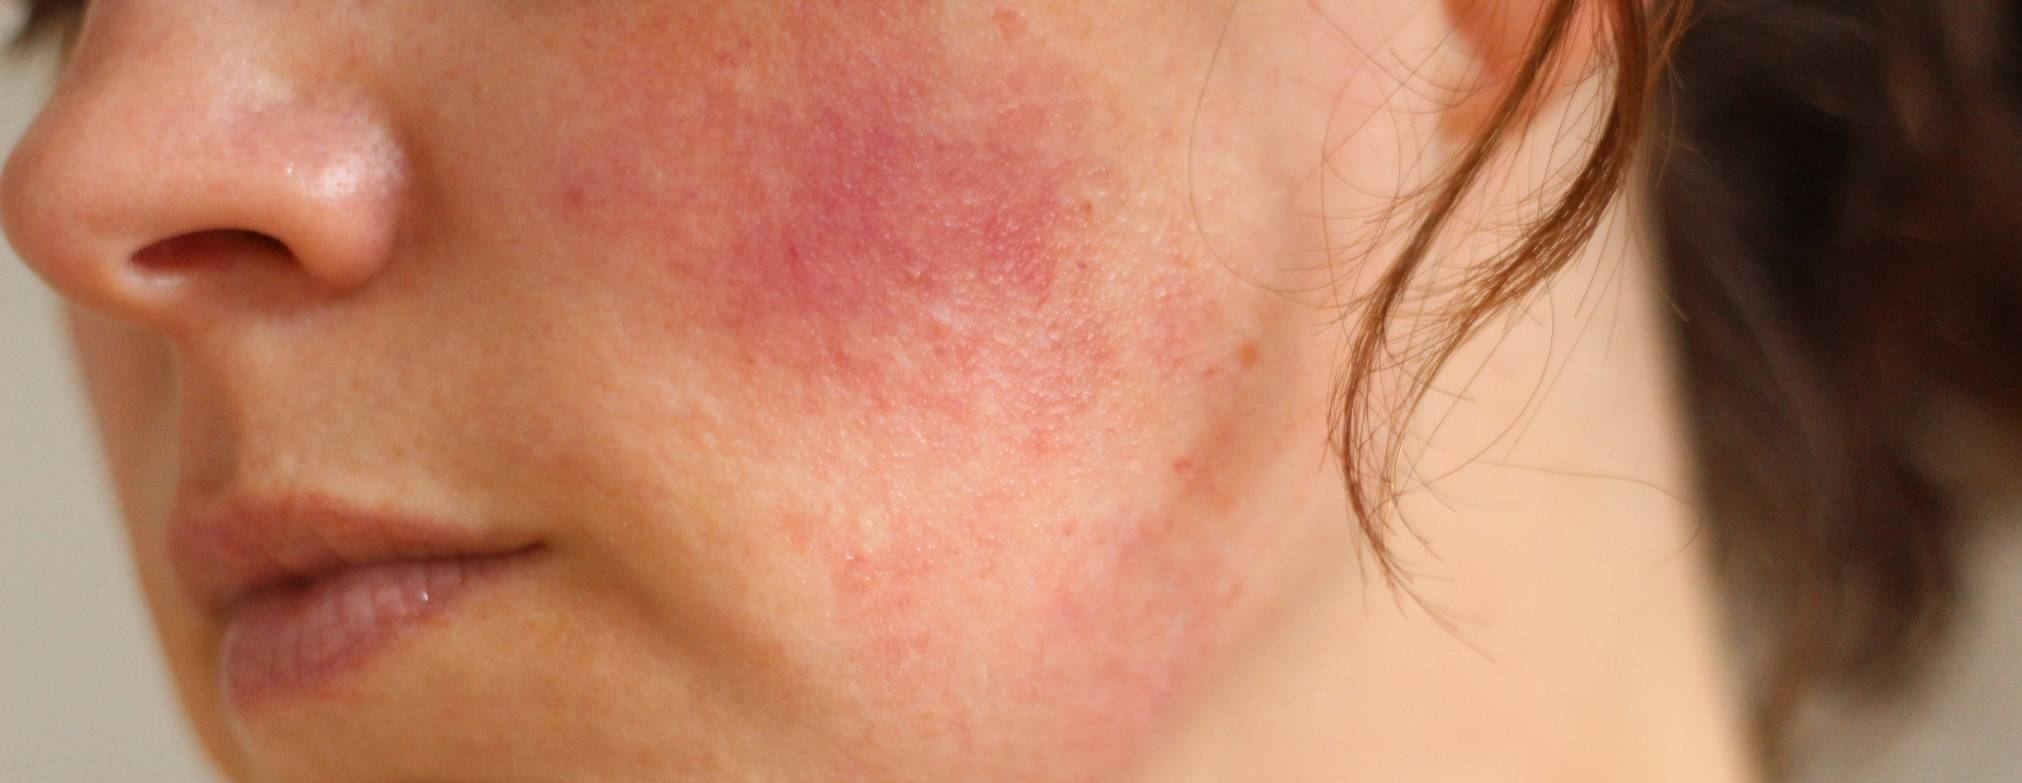 Холодовая аллергия на лице: причины, разновидности, лечение с продукцией бренда pleyana